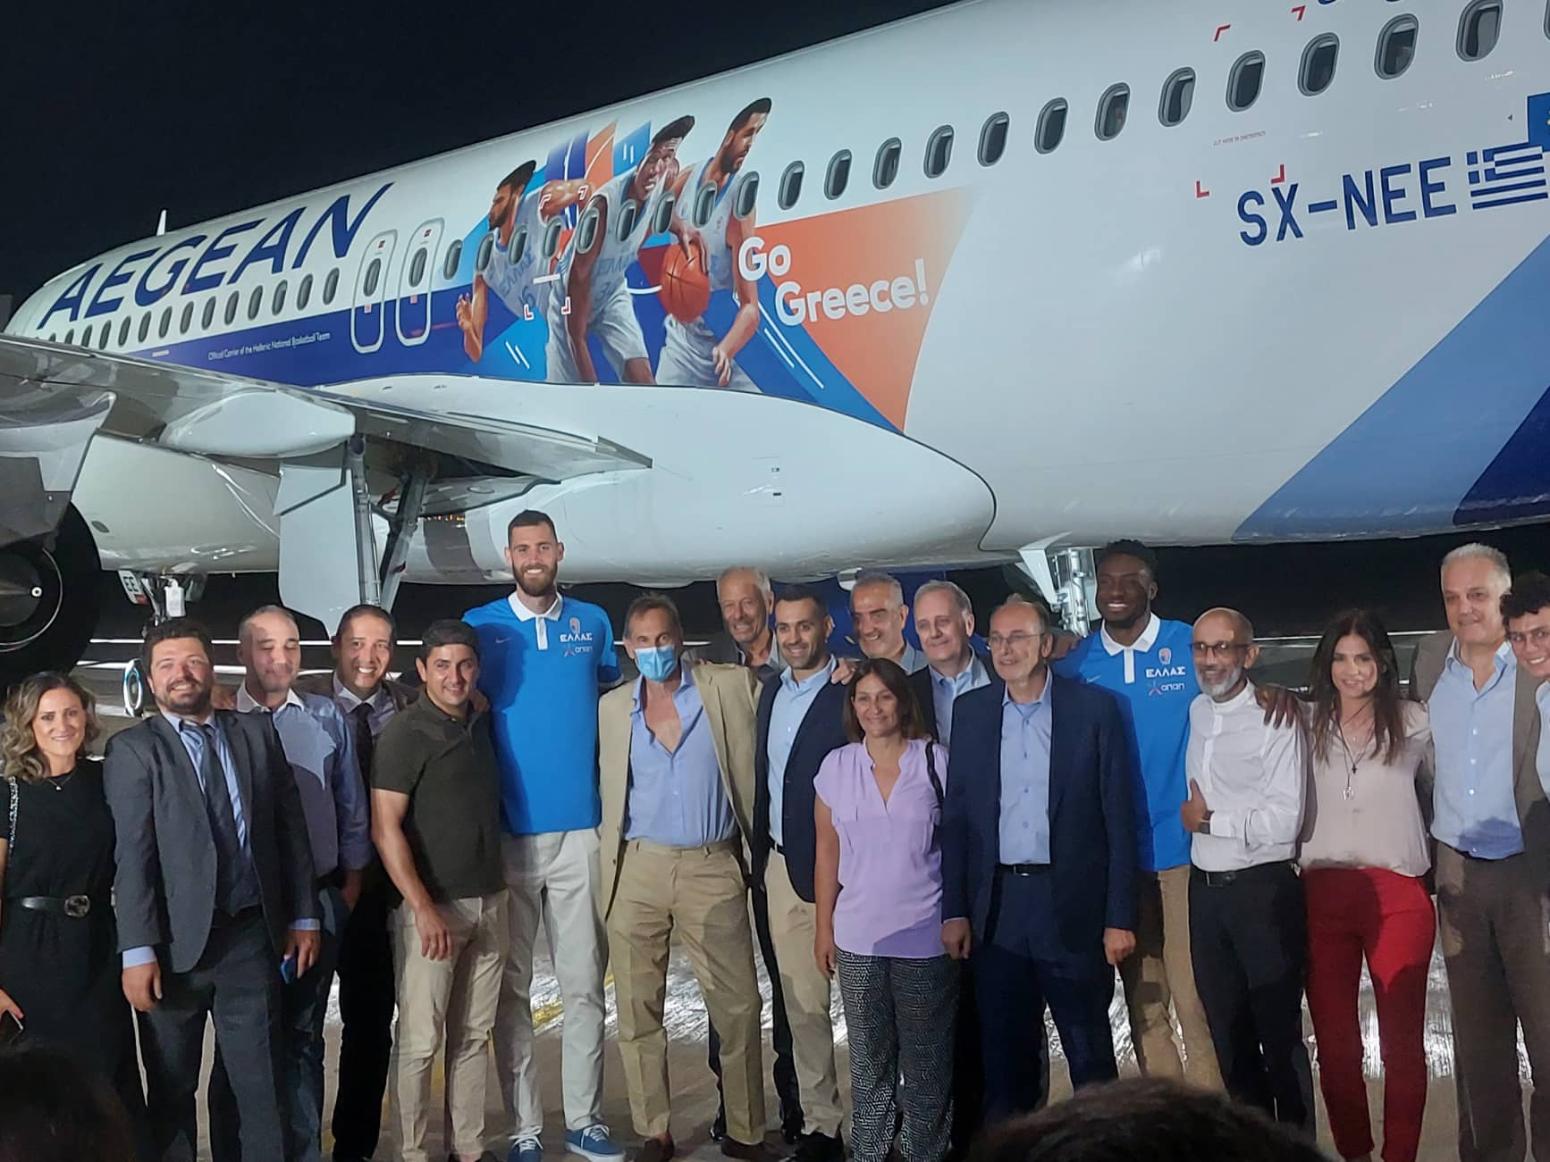 Εθνική ομάδα: Το αεροπλάνο με τις μορφές 6 παικτών